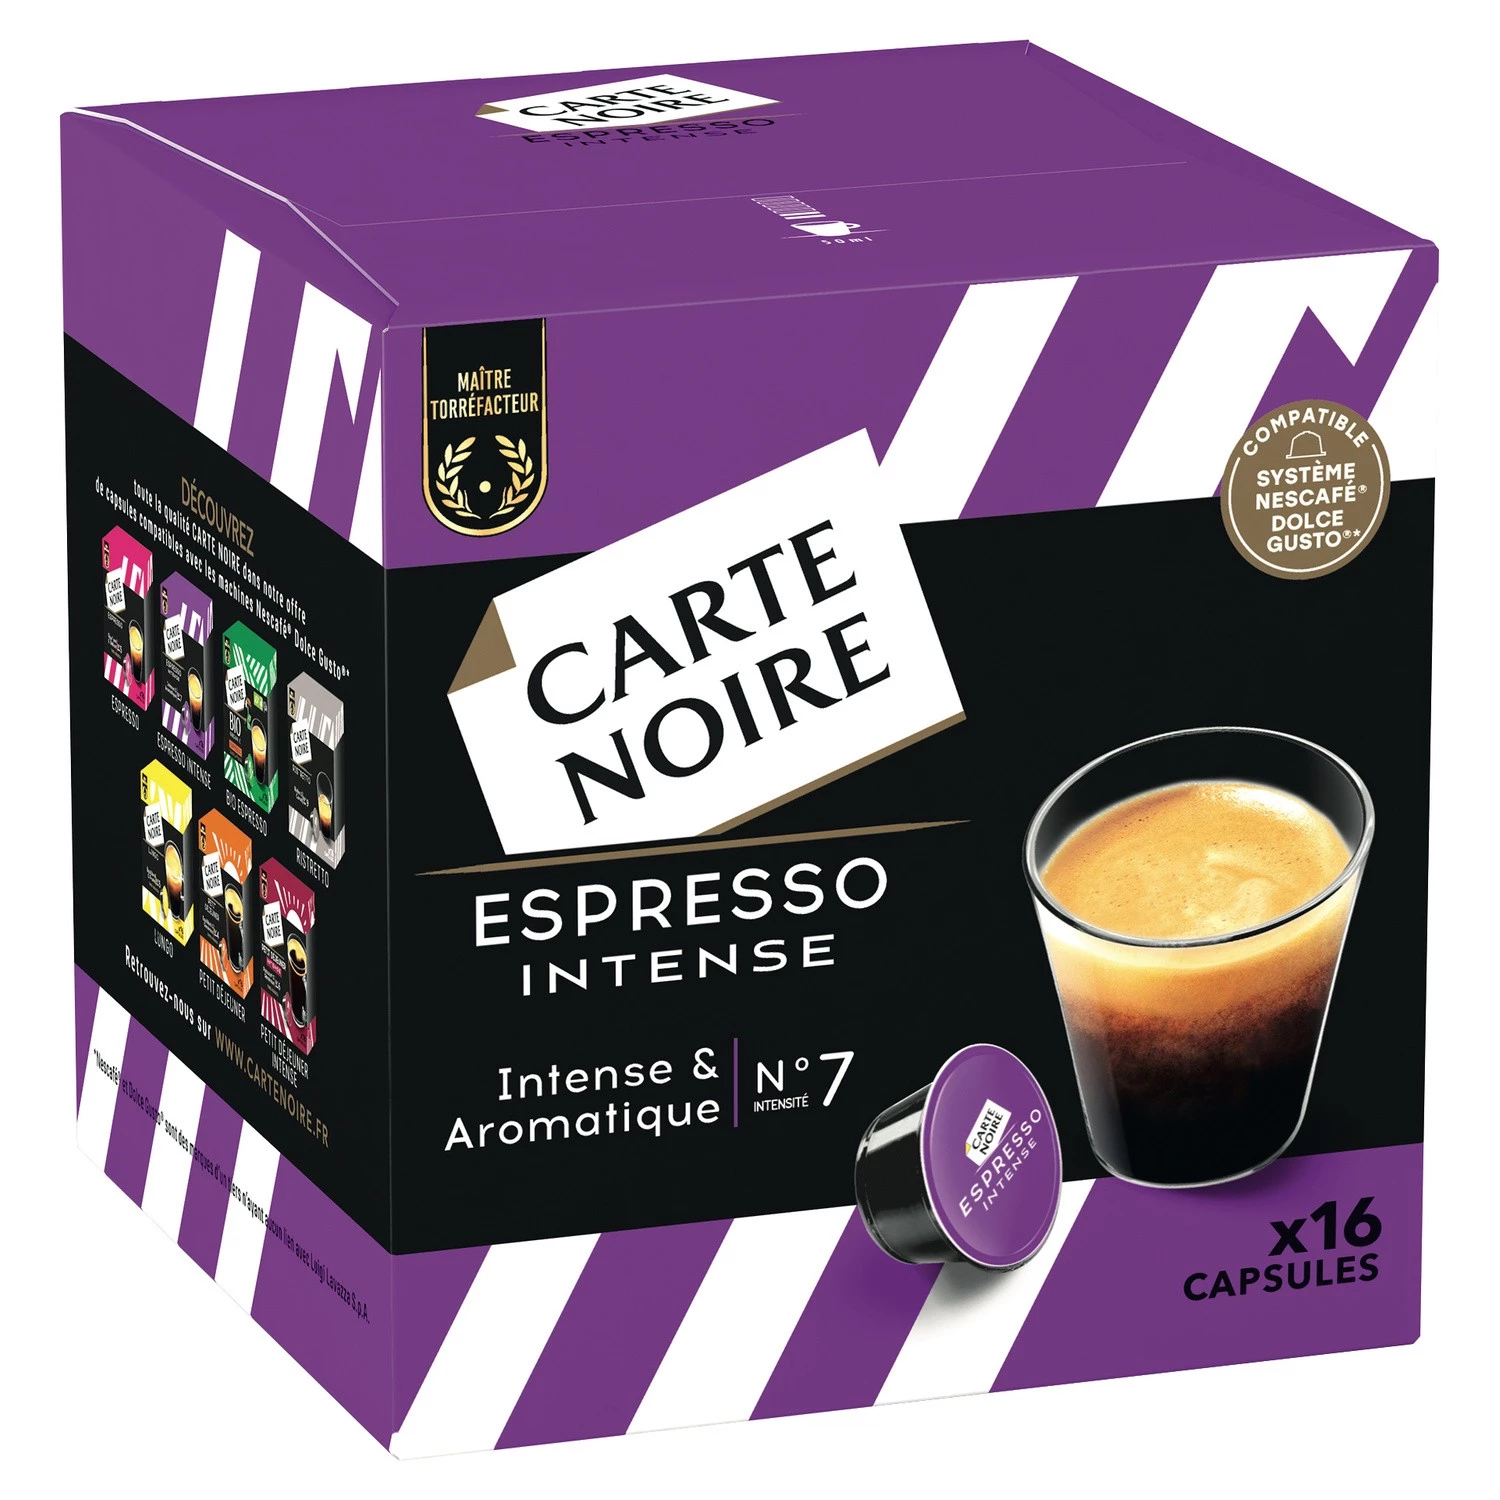 Café-espresso intens nr. 7 x16 capsules 128g - CARTE NOIRE